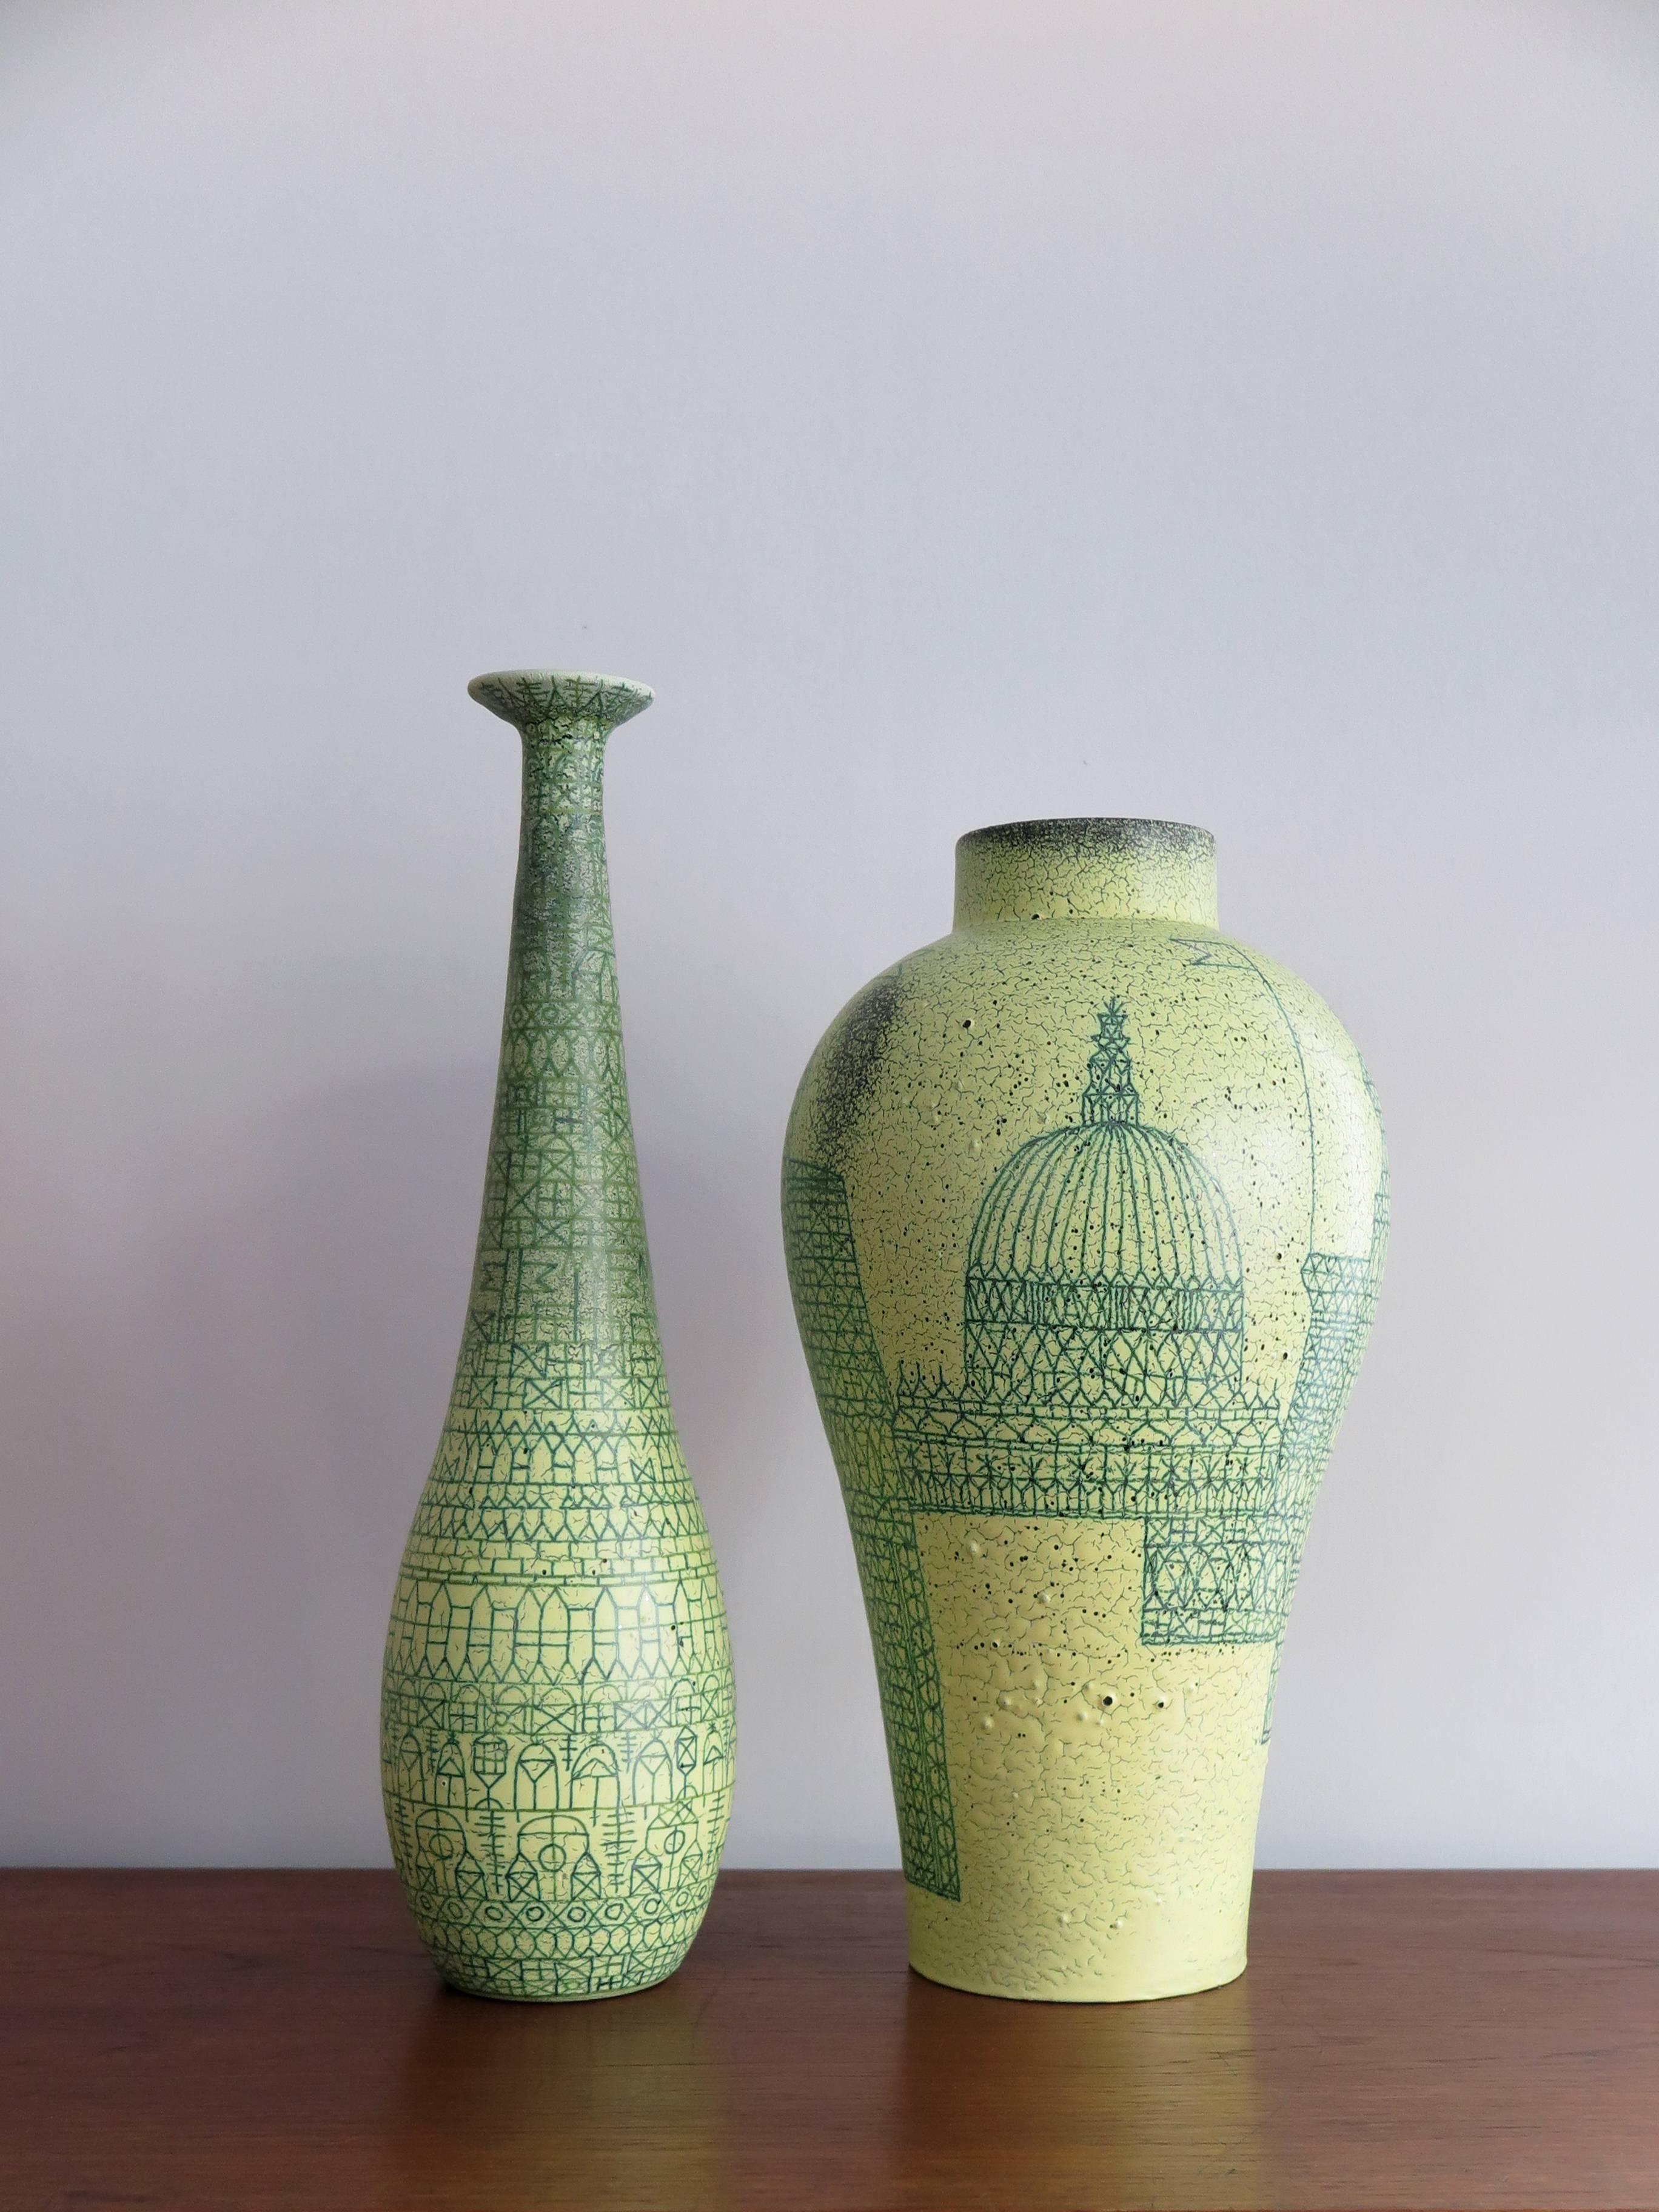 Couple of vintage Italian ceramic big vases designed by Ivo Sassi Faenza, circa 1960,
signed Sassi Faenza.
Measurement from left:
- Diameter 13 cm, height 45 cm
- Diameter 23 cm, height 41 cm.